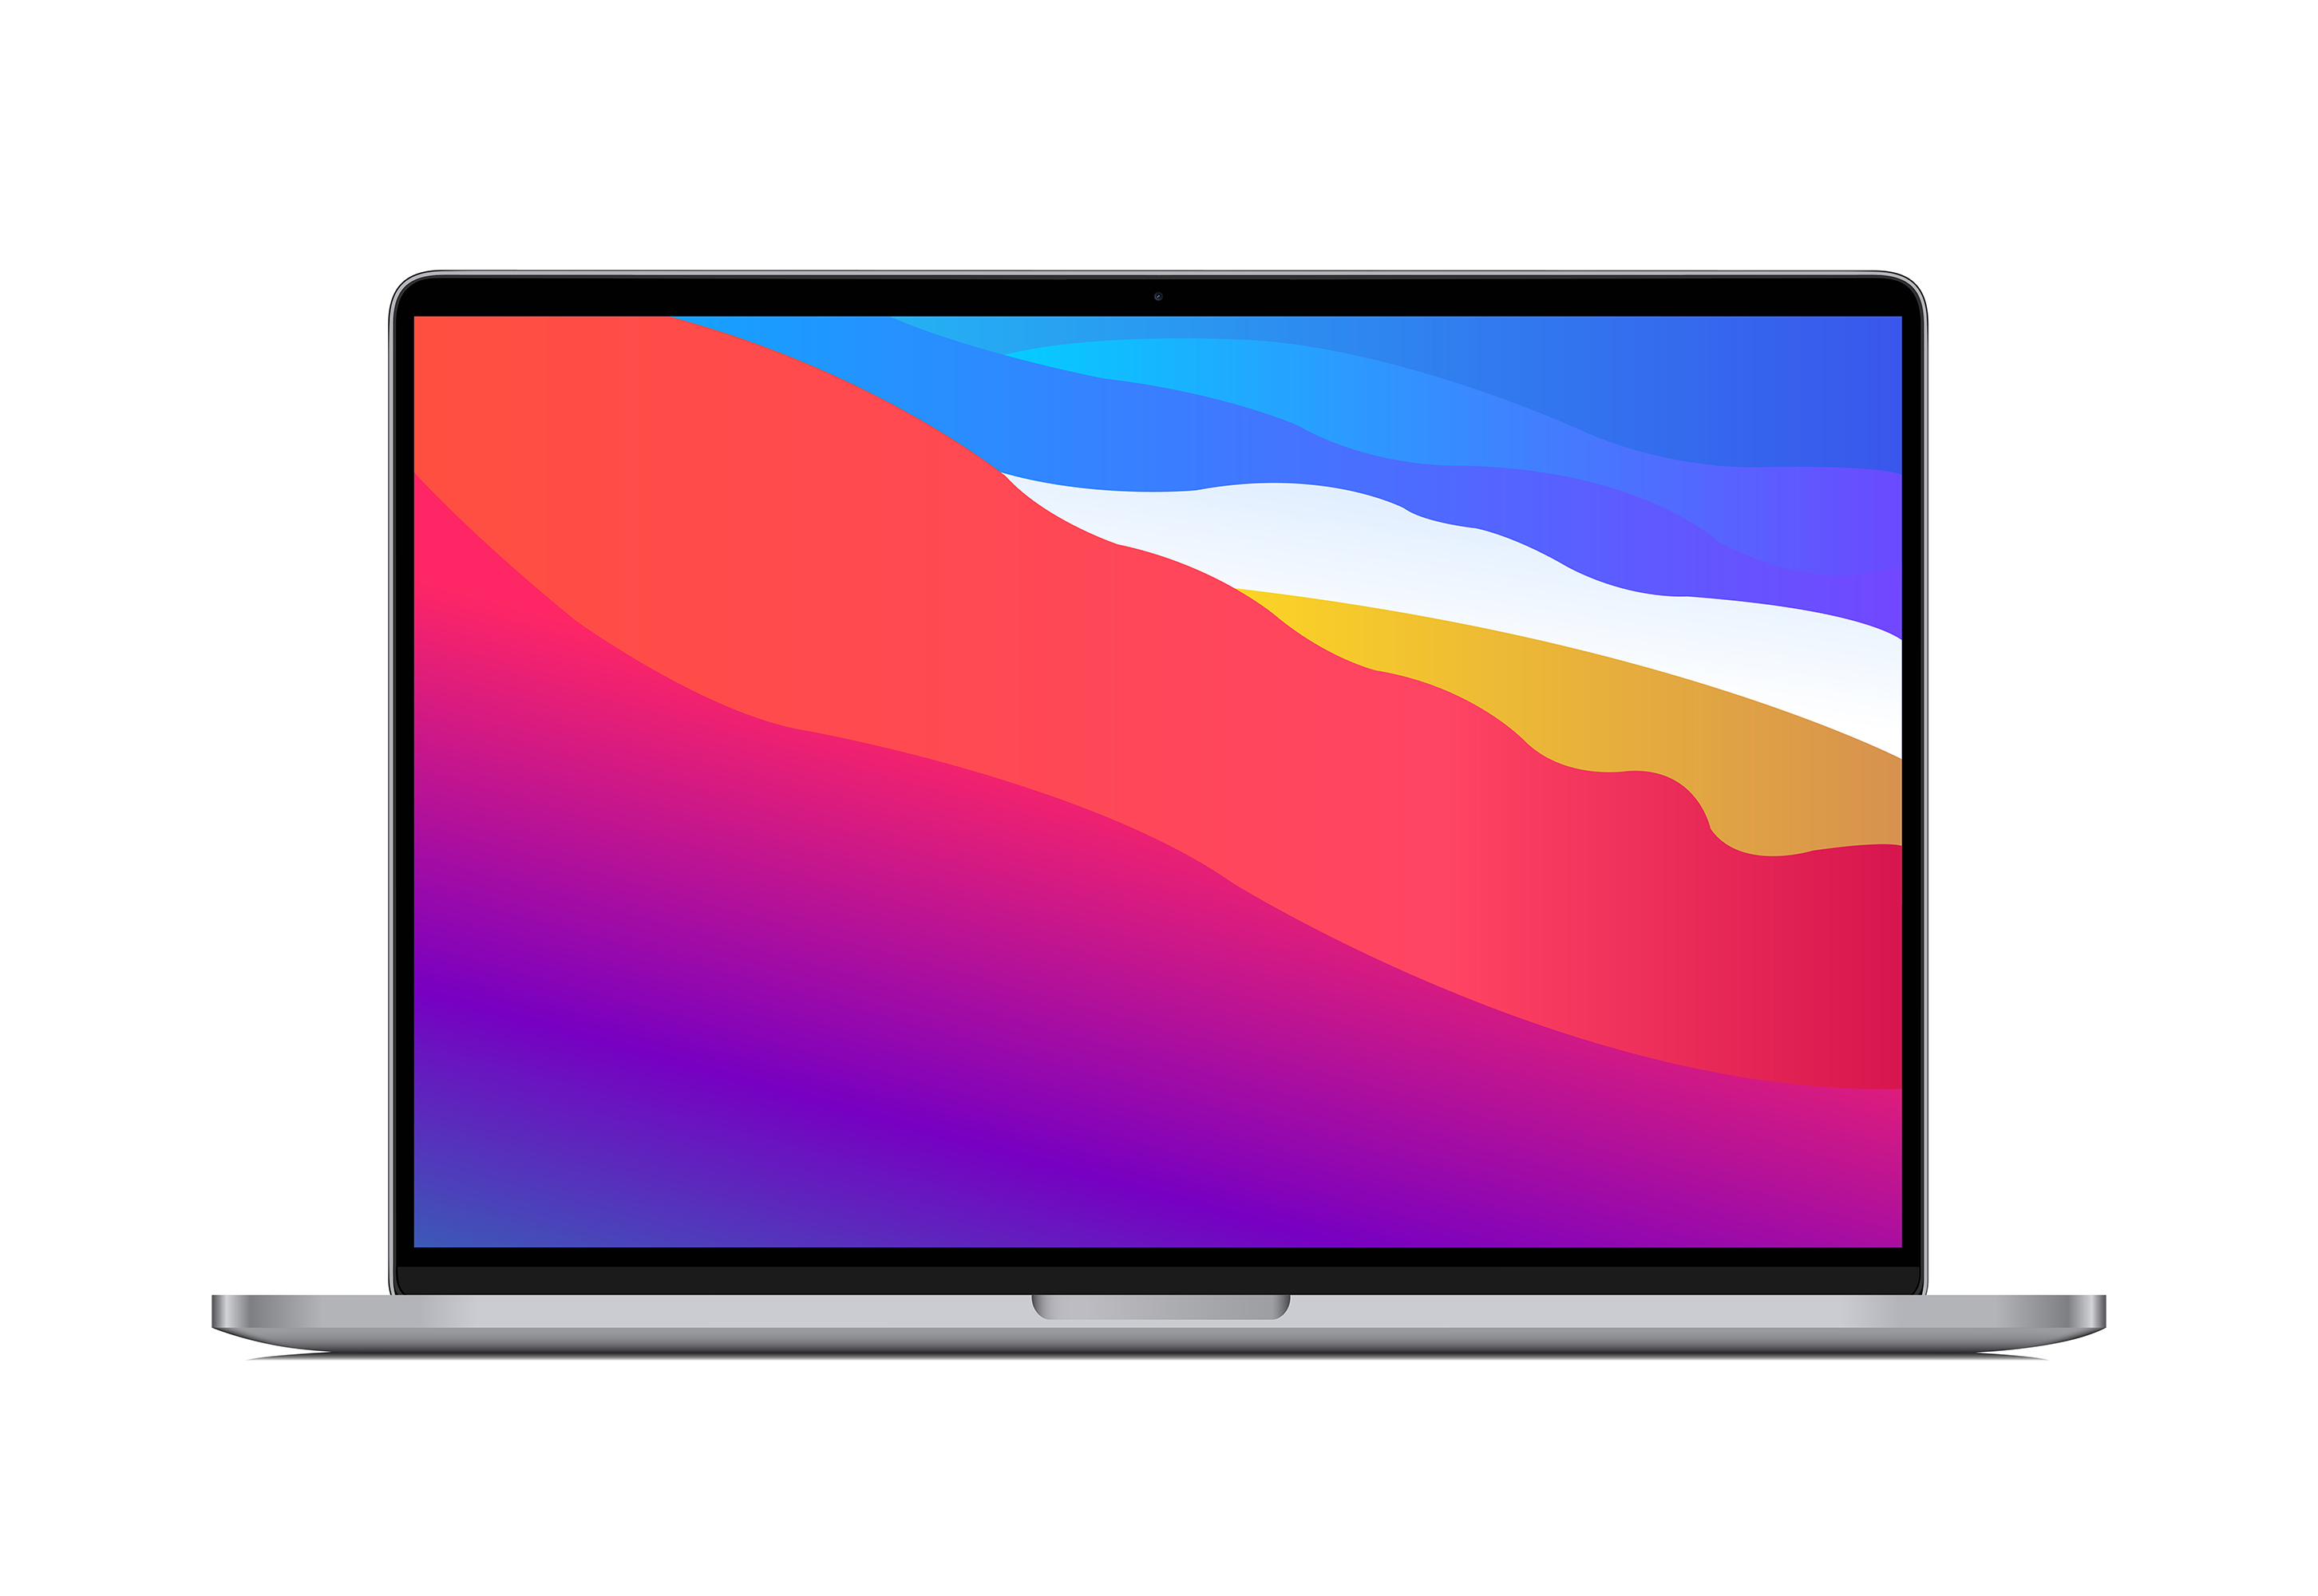 ekosystem-apple-macbook-pro.jpg